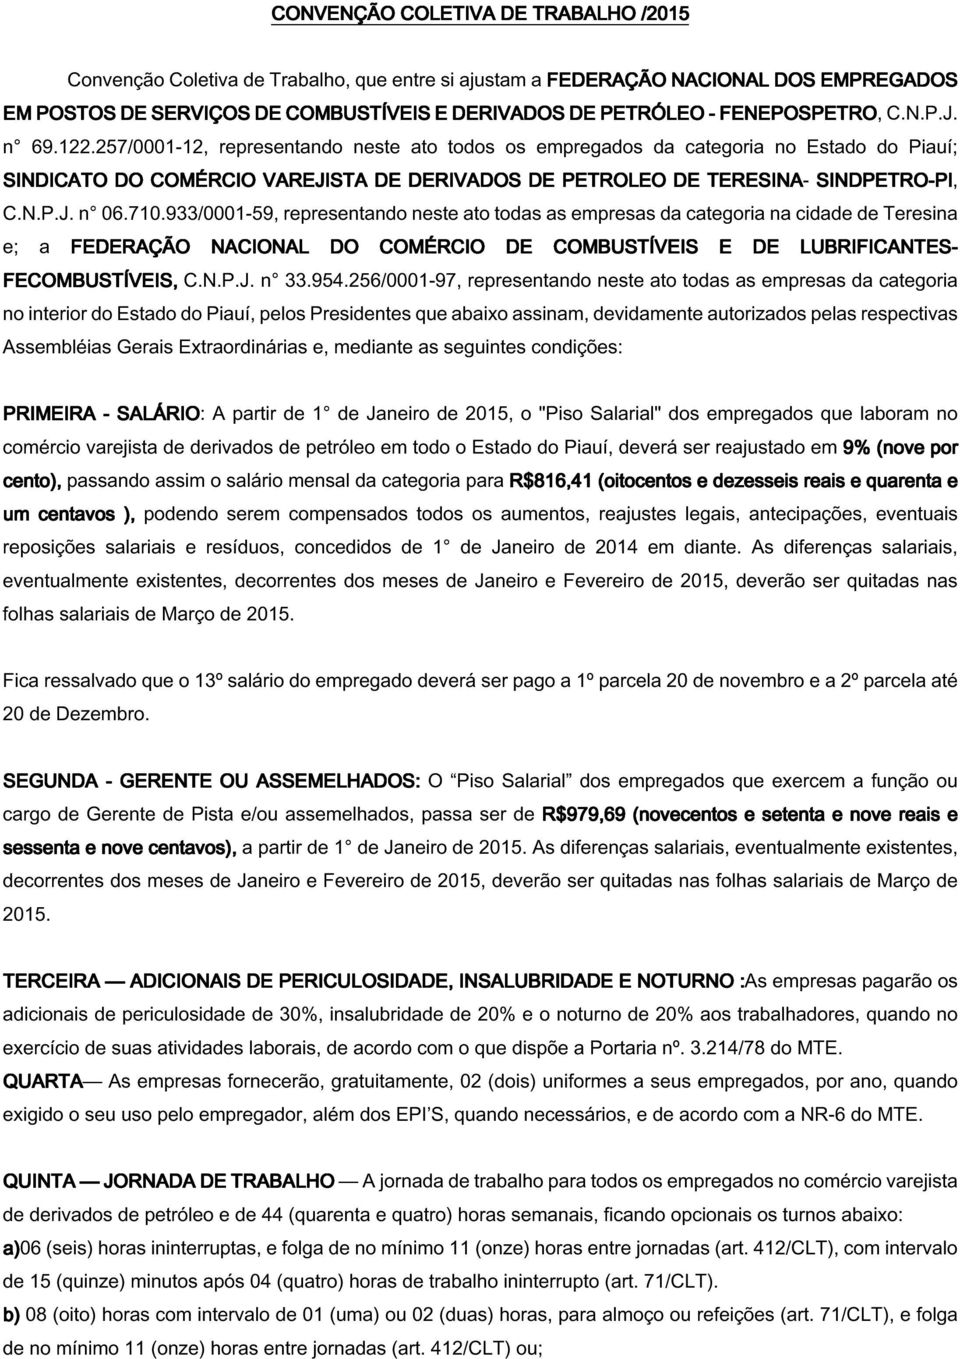 257/0001-12, representando neste ato todos os empregados da categoria no Estado do Piauí; SINDICATO DO COMÉRCIO VAREJISTA DE DERIVADOS DE PETROLEO DE TERESINA- SINDPETRO-PI PI, C.N.P.J. n 06.710.